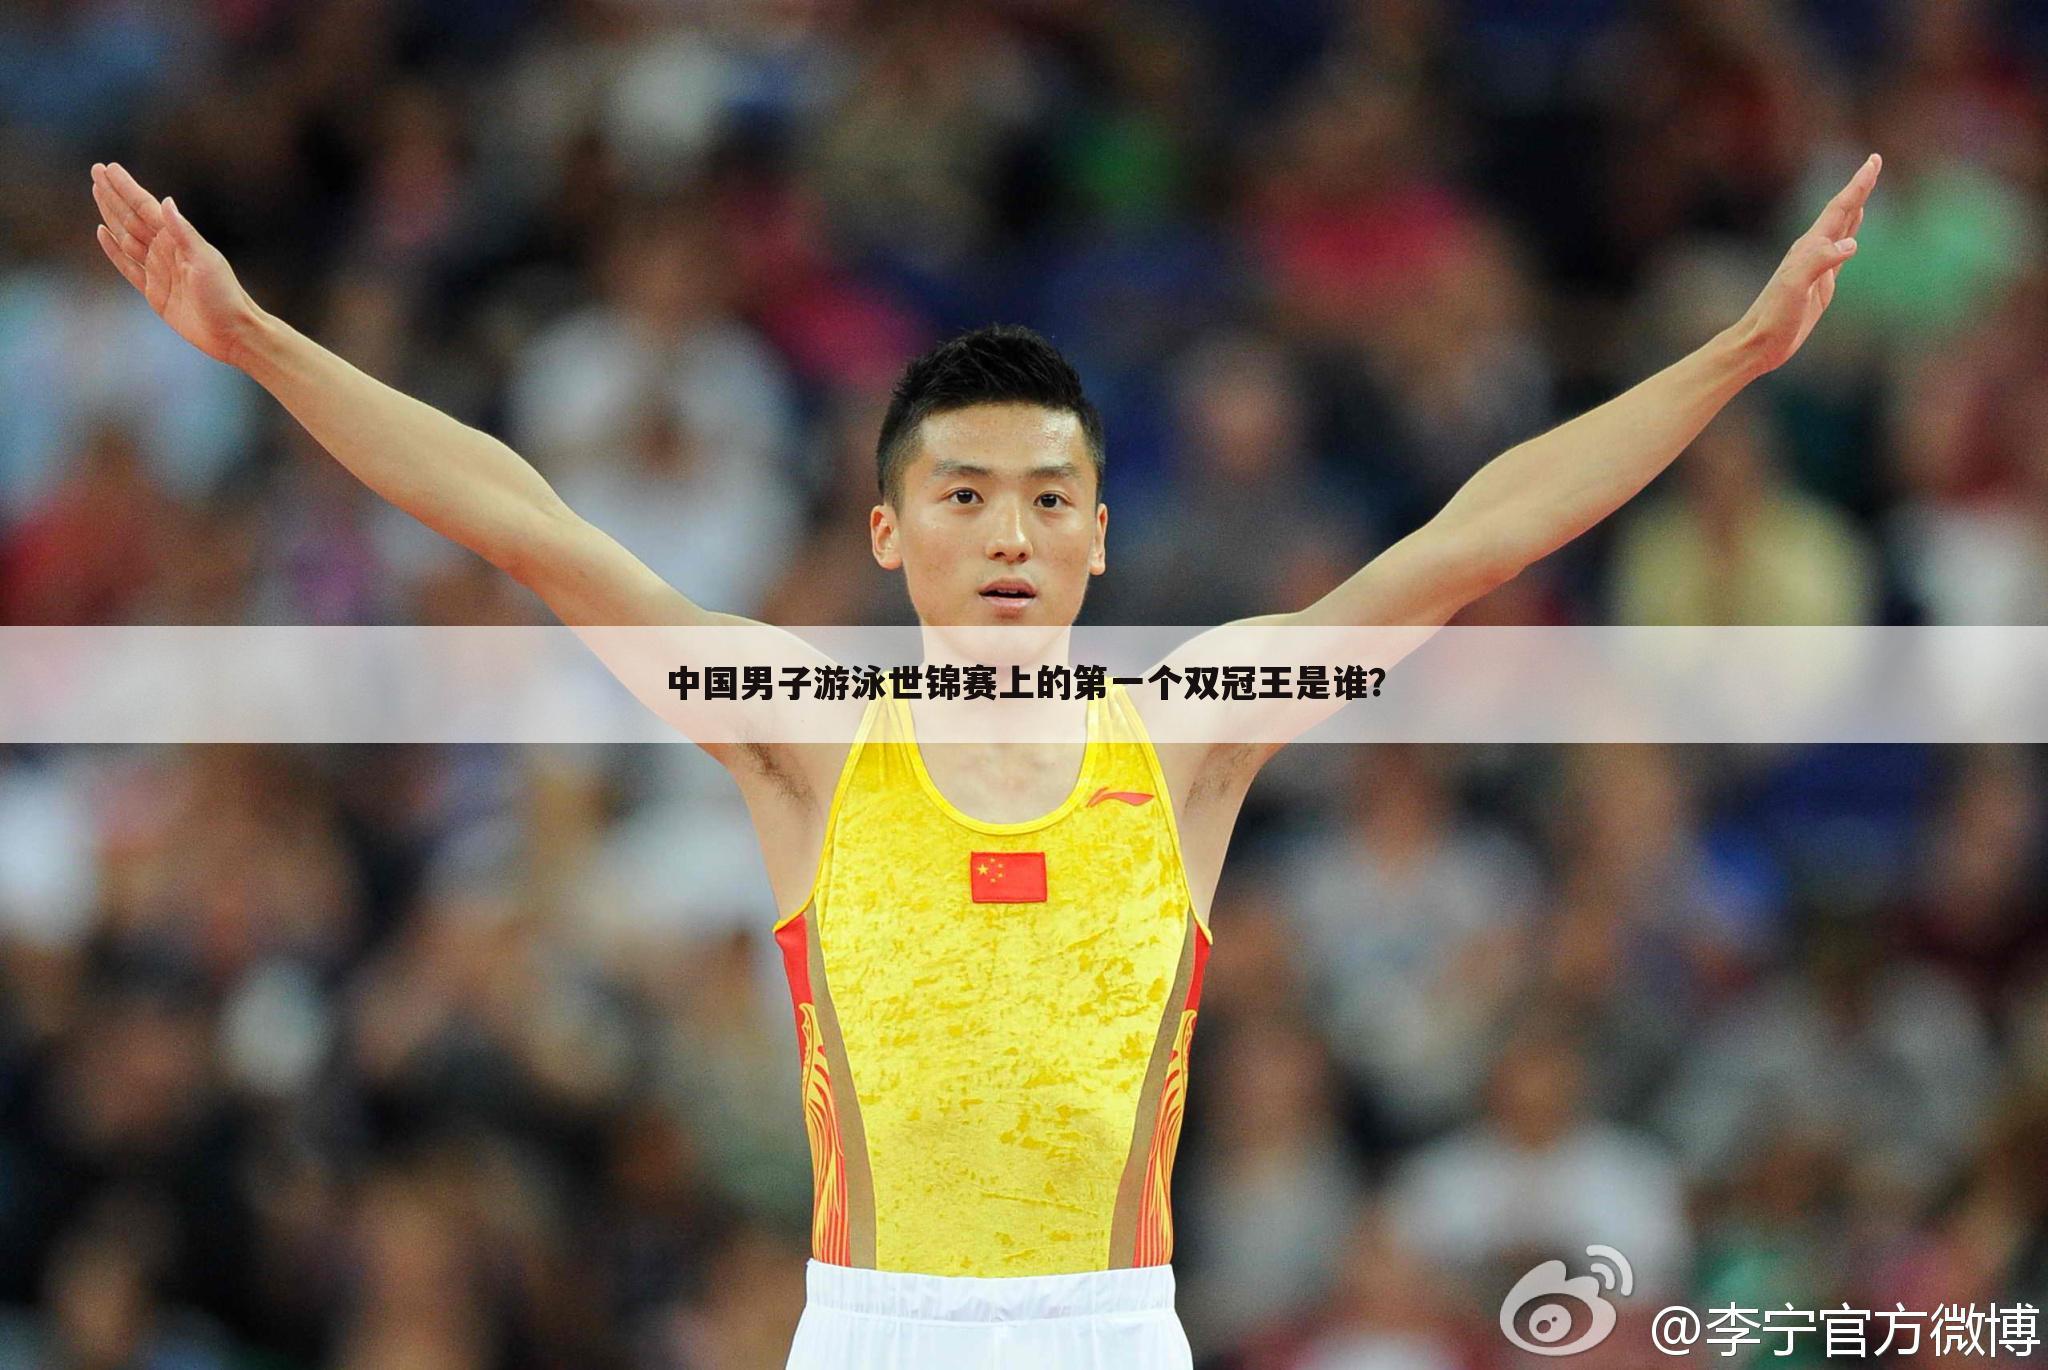 中国男子游泳世锦赛上的第一个双冠王是谁？